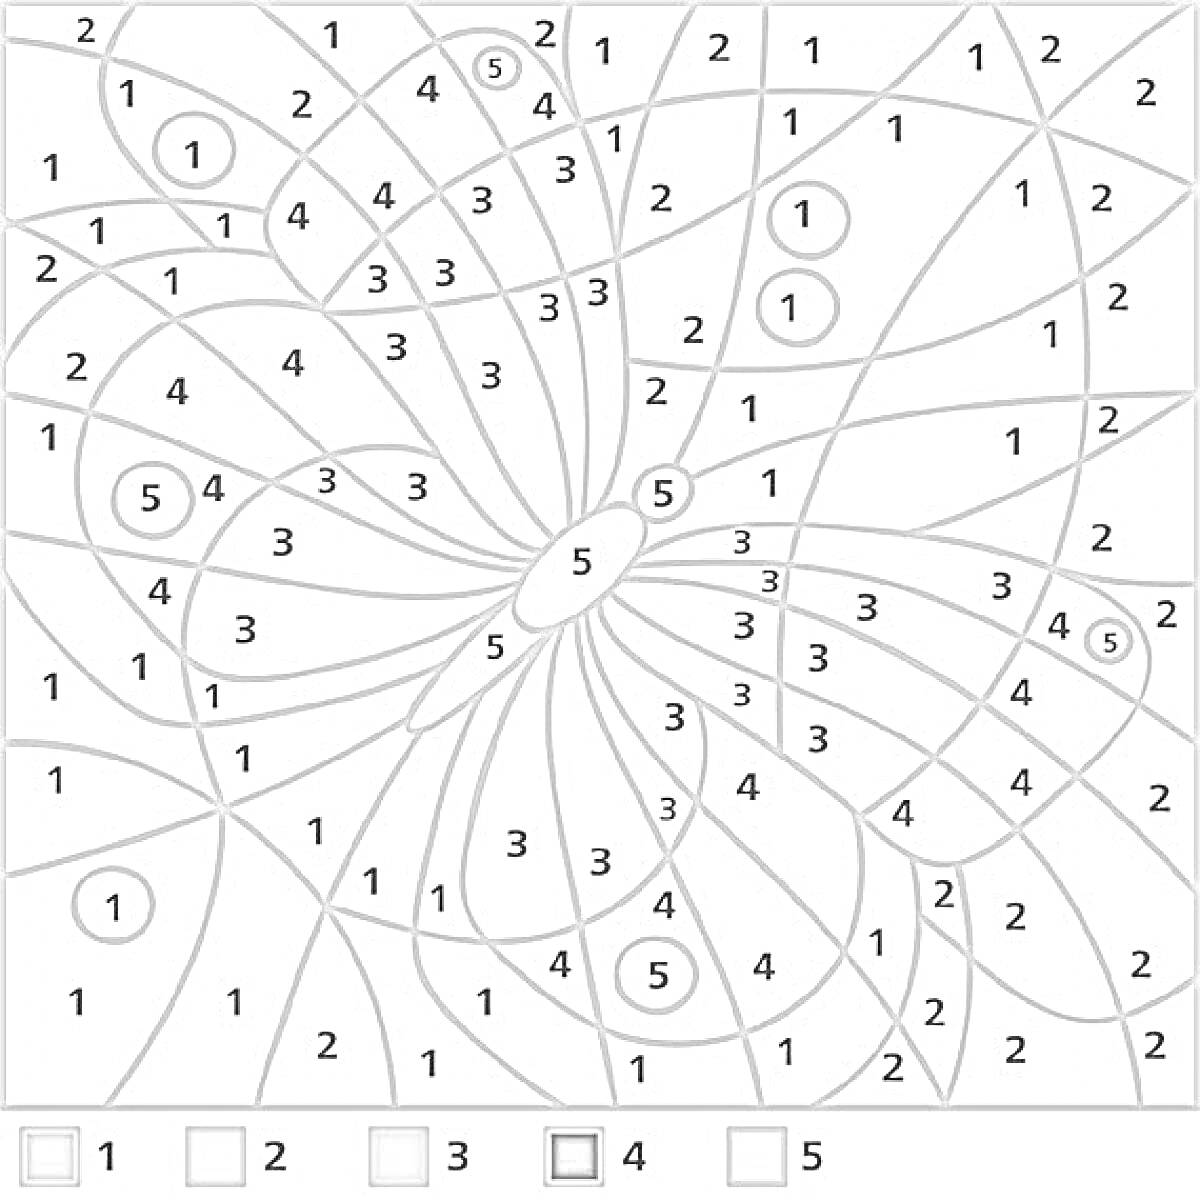 Раскраска Раскраска по номерам с математическими элементами: числами 1, 2, 3, 4 и 5